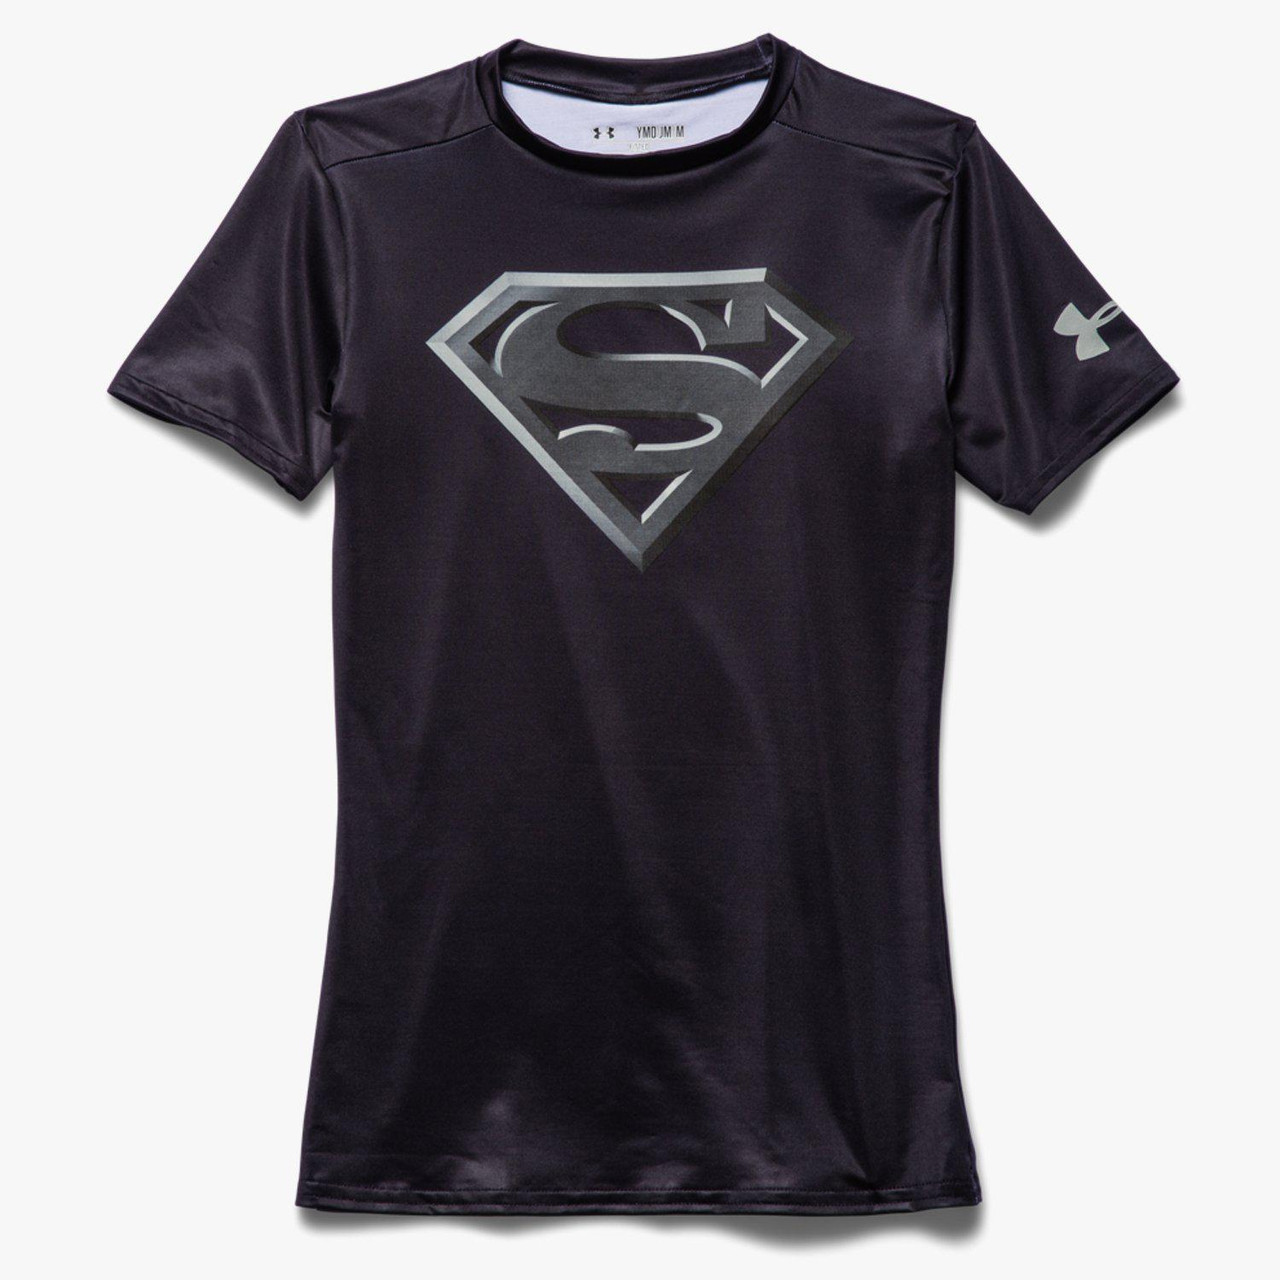 Under Armour Superman Compression Shirt (1244399-401) Men's size S-M